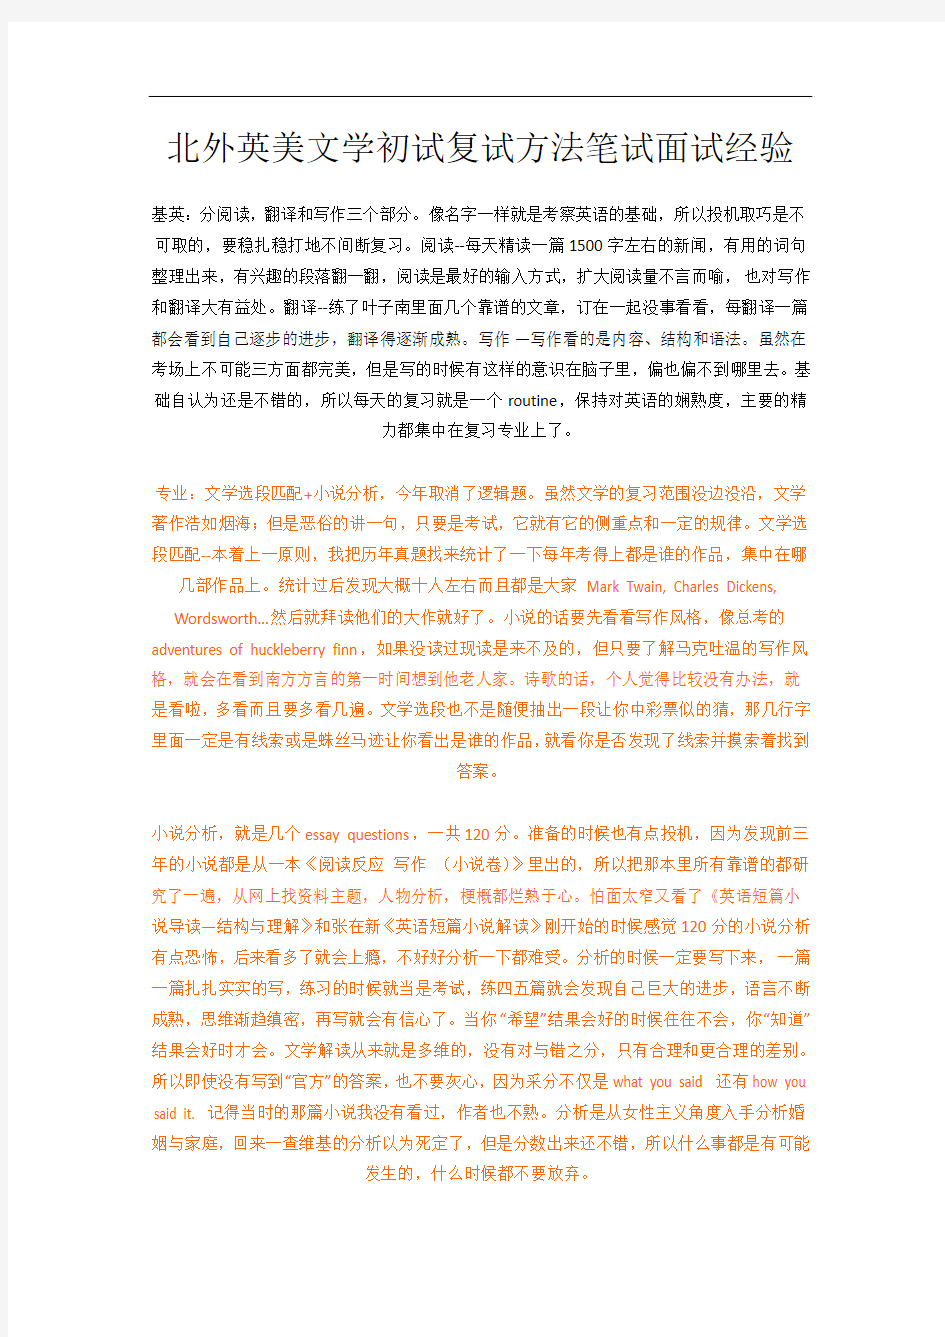 北京外国语大学英美文学初试复试方法笔试面试经验